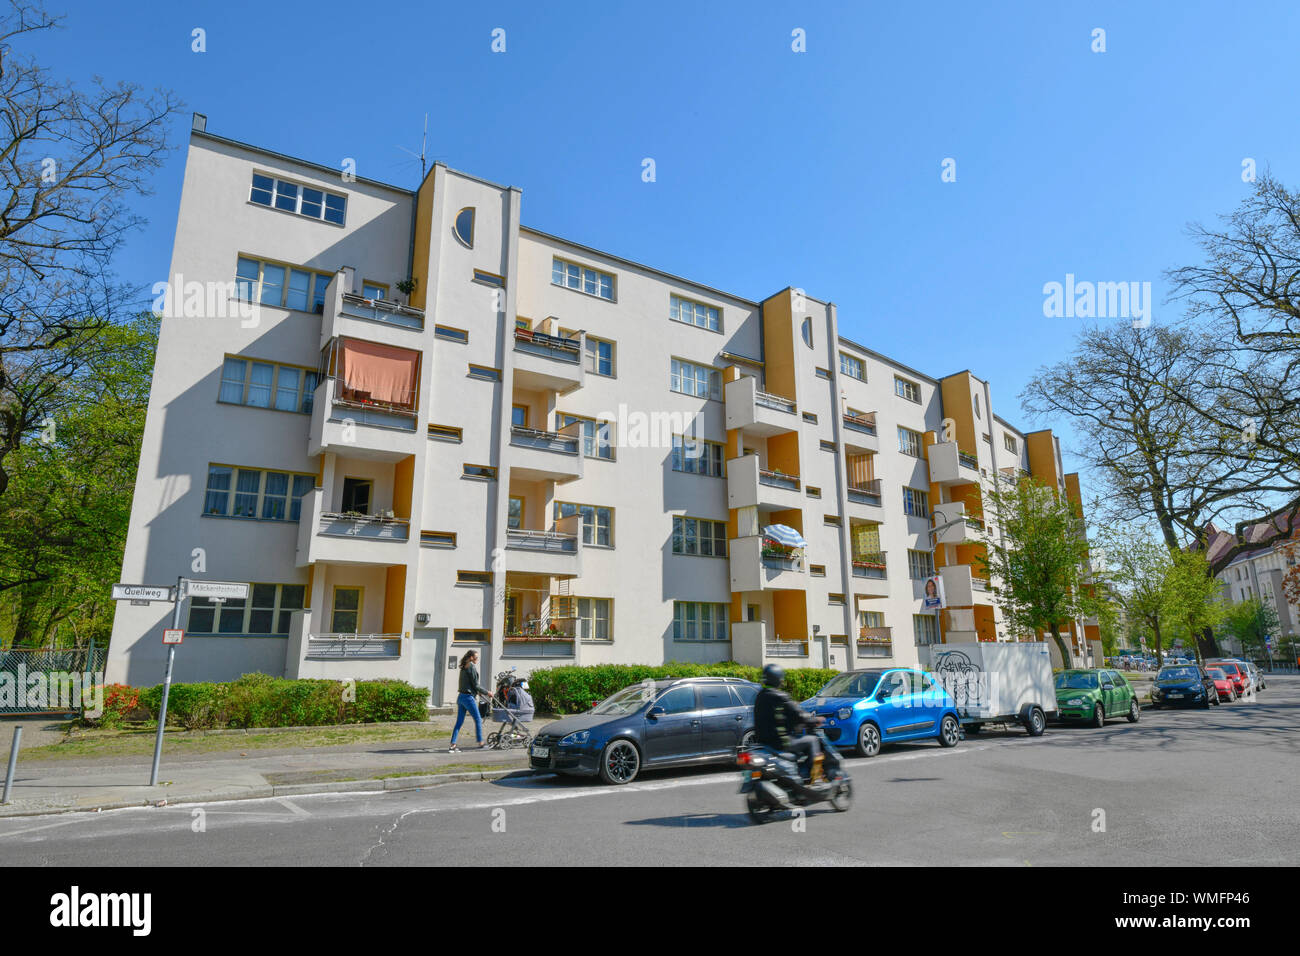 Wohnbauten von Hans Scharoun, Maeckeritzstrasse, Grosssiedlung Siemensstadt, Spandau, Berlin, Deutschland, Mäckeritzstrasse Foto de stock